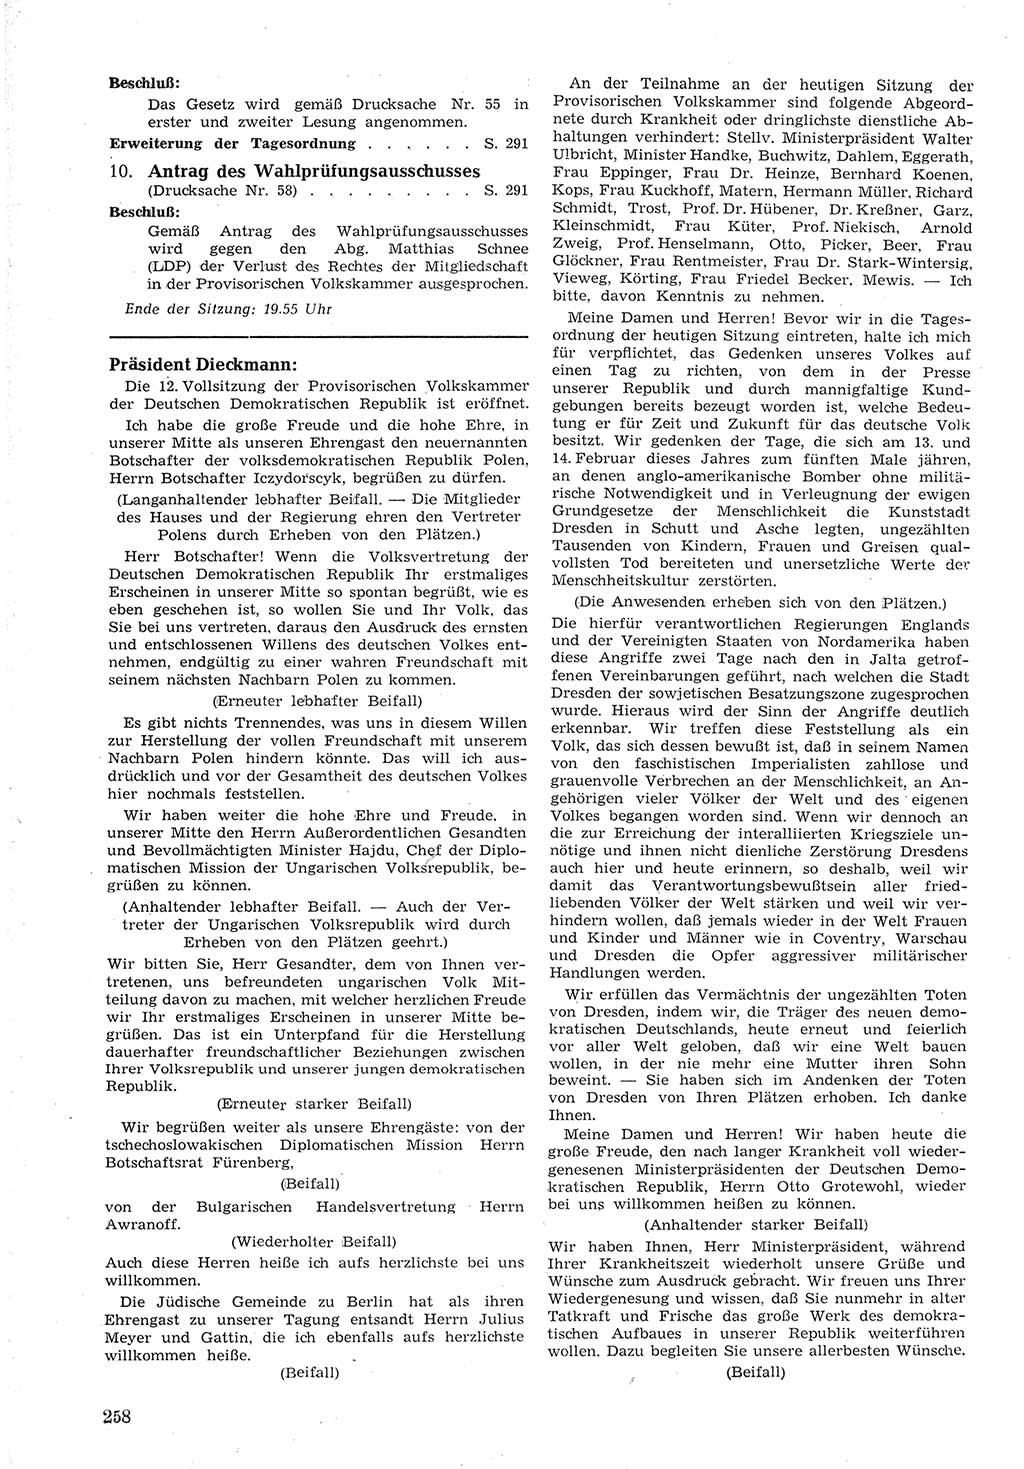 Provisorische Volkskammer (VK) der Deutschen Demokratischen Republik (DDR) 1949-1950, Dokument 272 (Prov. VK DDR 1949-1950, Dok. 272)